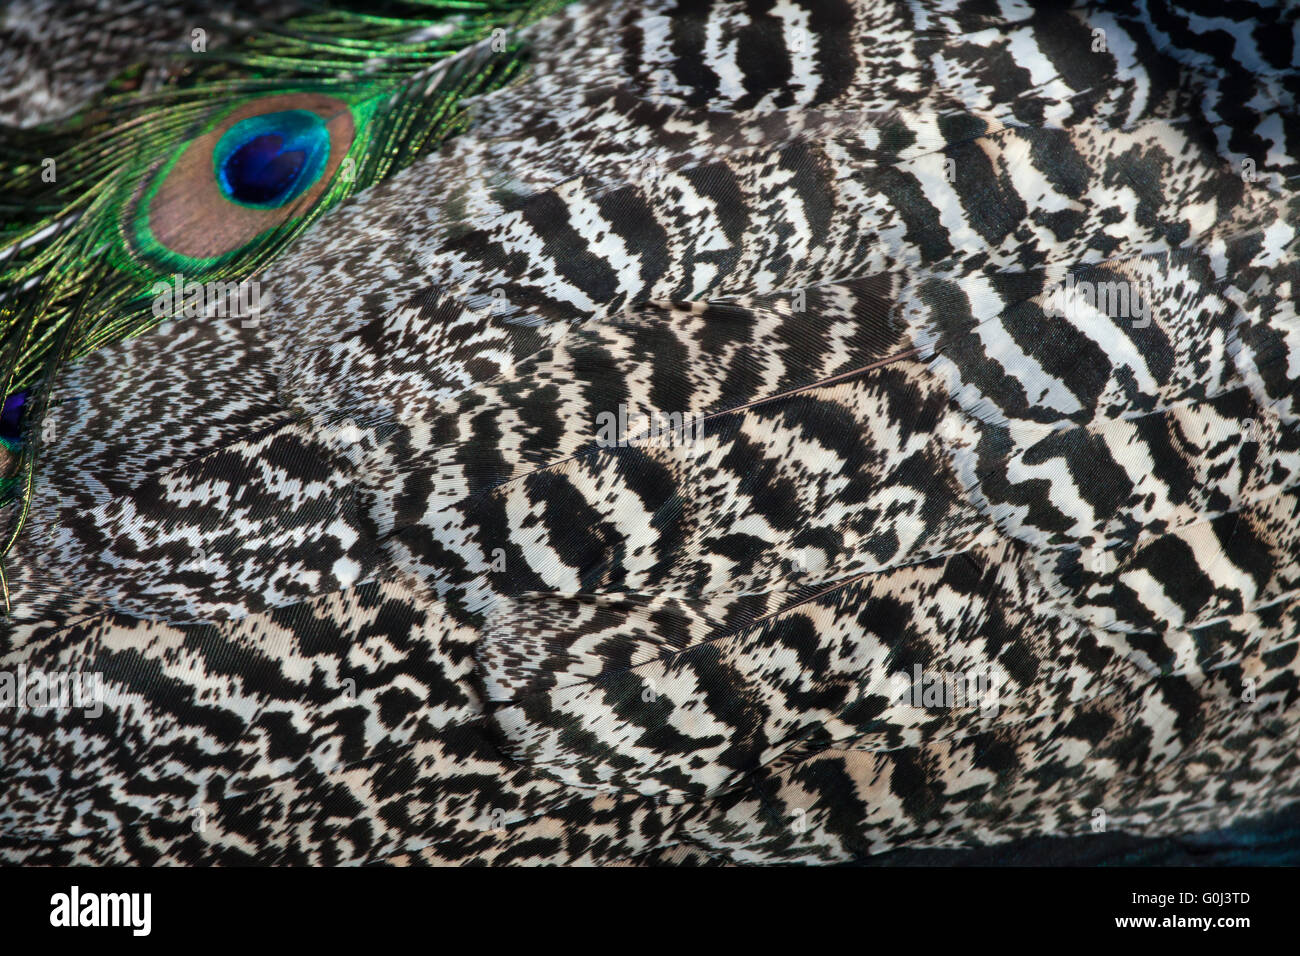 Piumaggio di indiani peafowl (Pavo cristatus), noto anche come il peafowl blu. La vita selvatica animale. Foto Stock